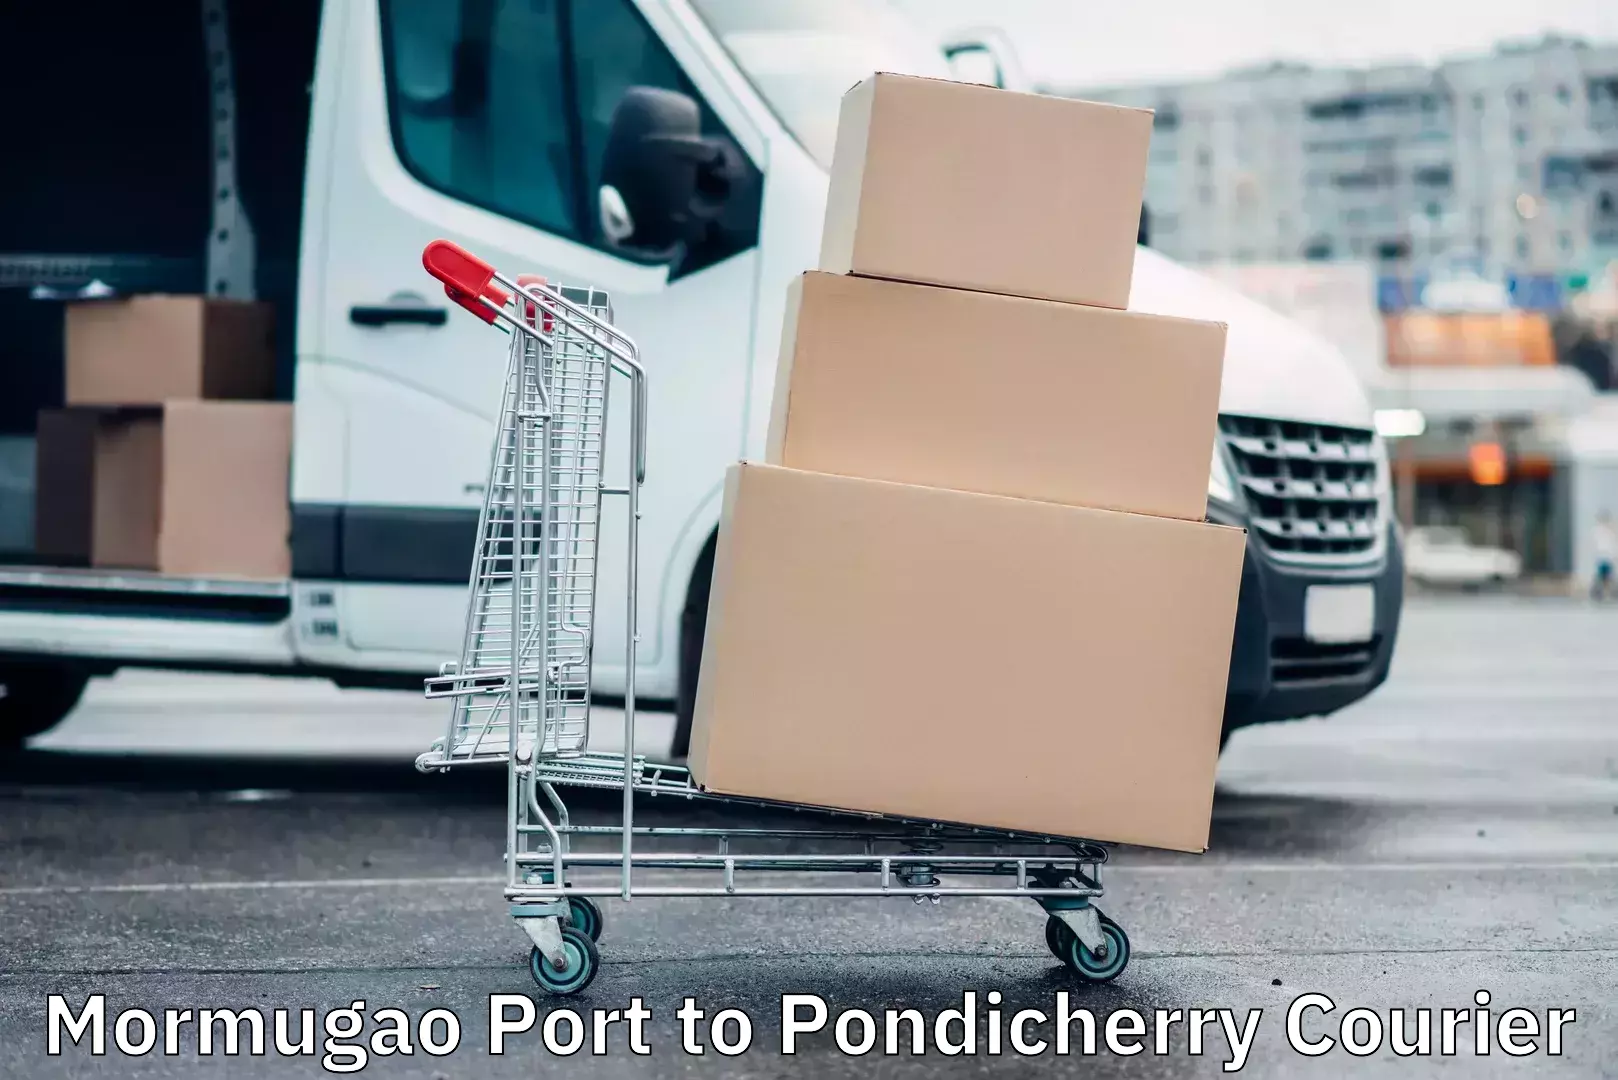 Quality courier services Mormugao Port to Pondicherry